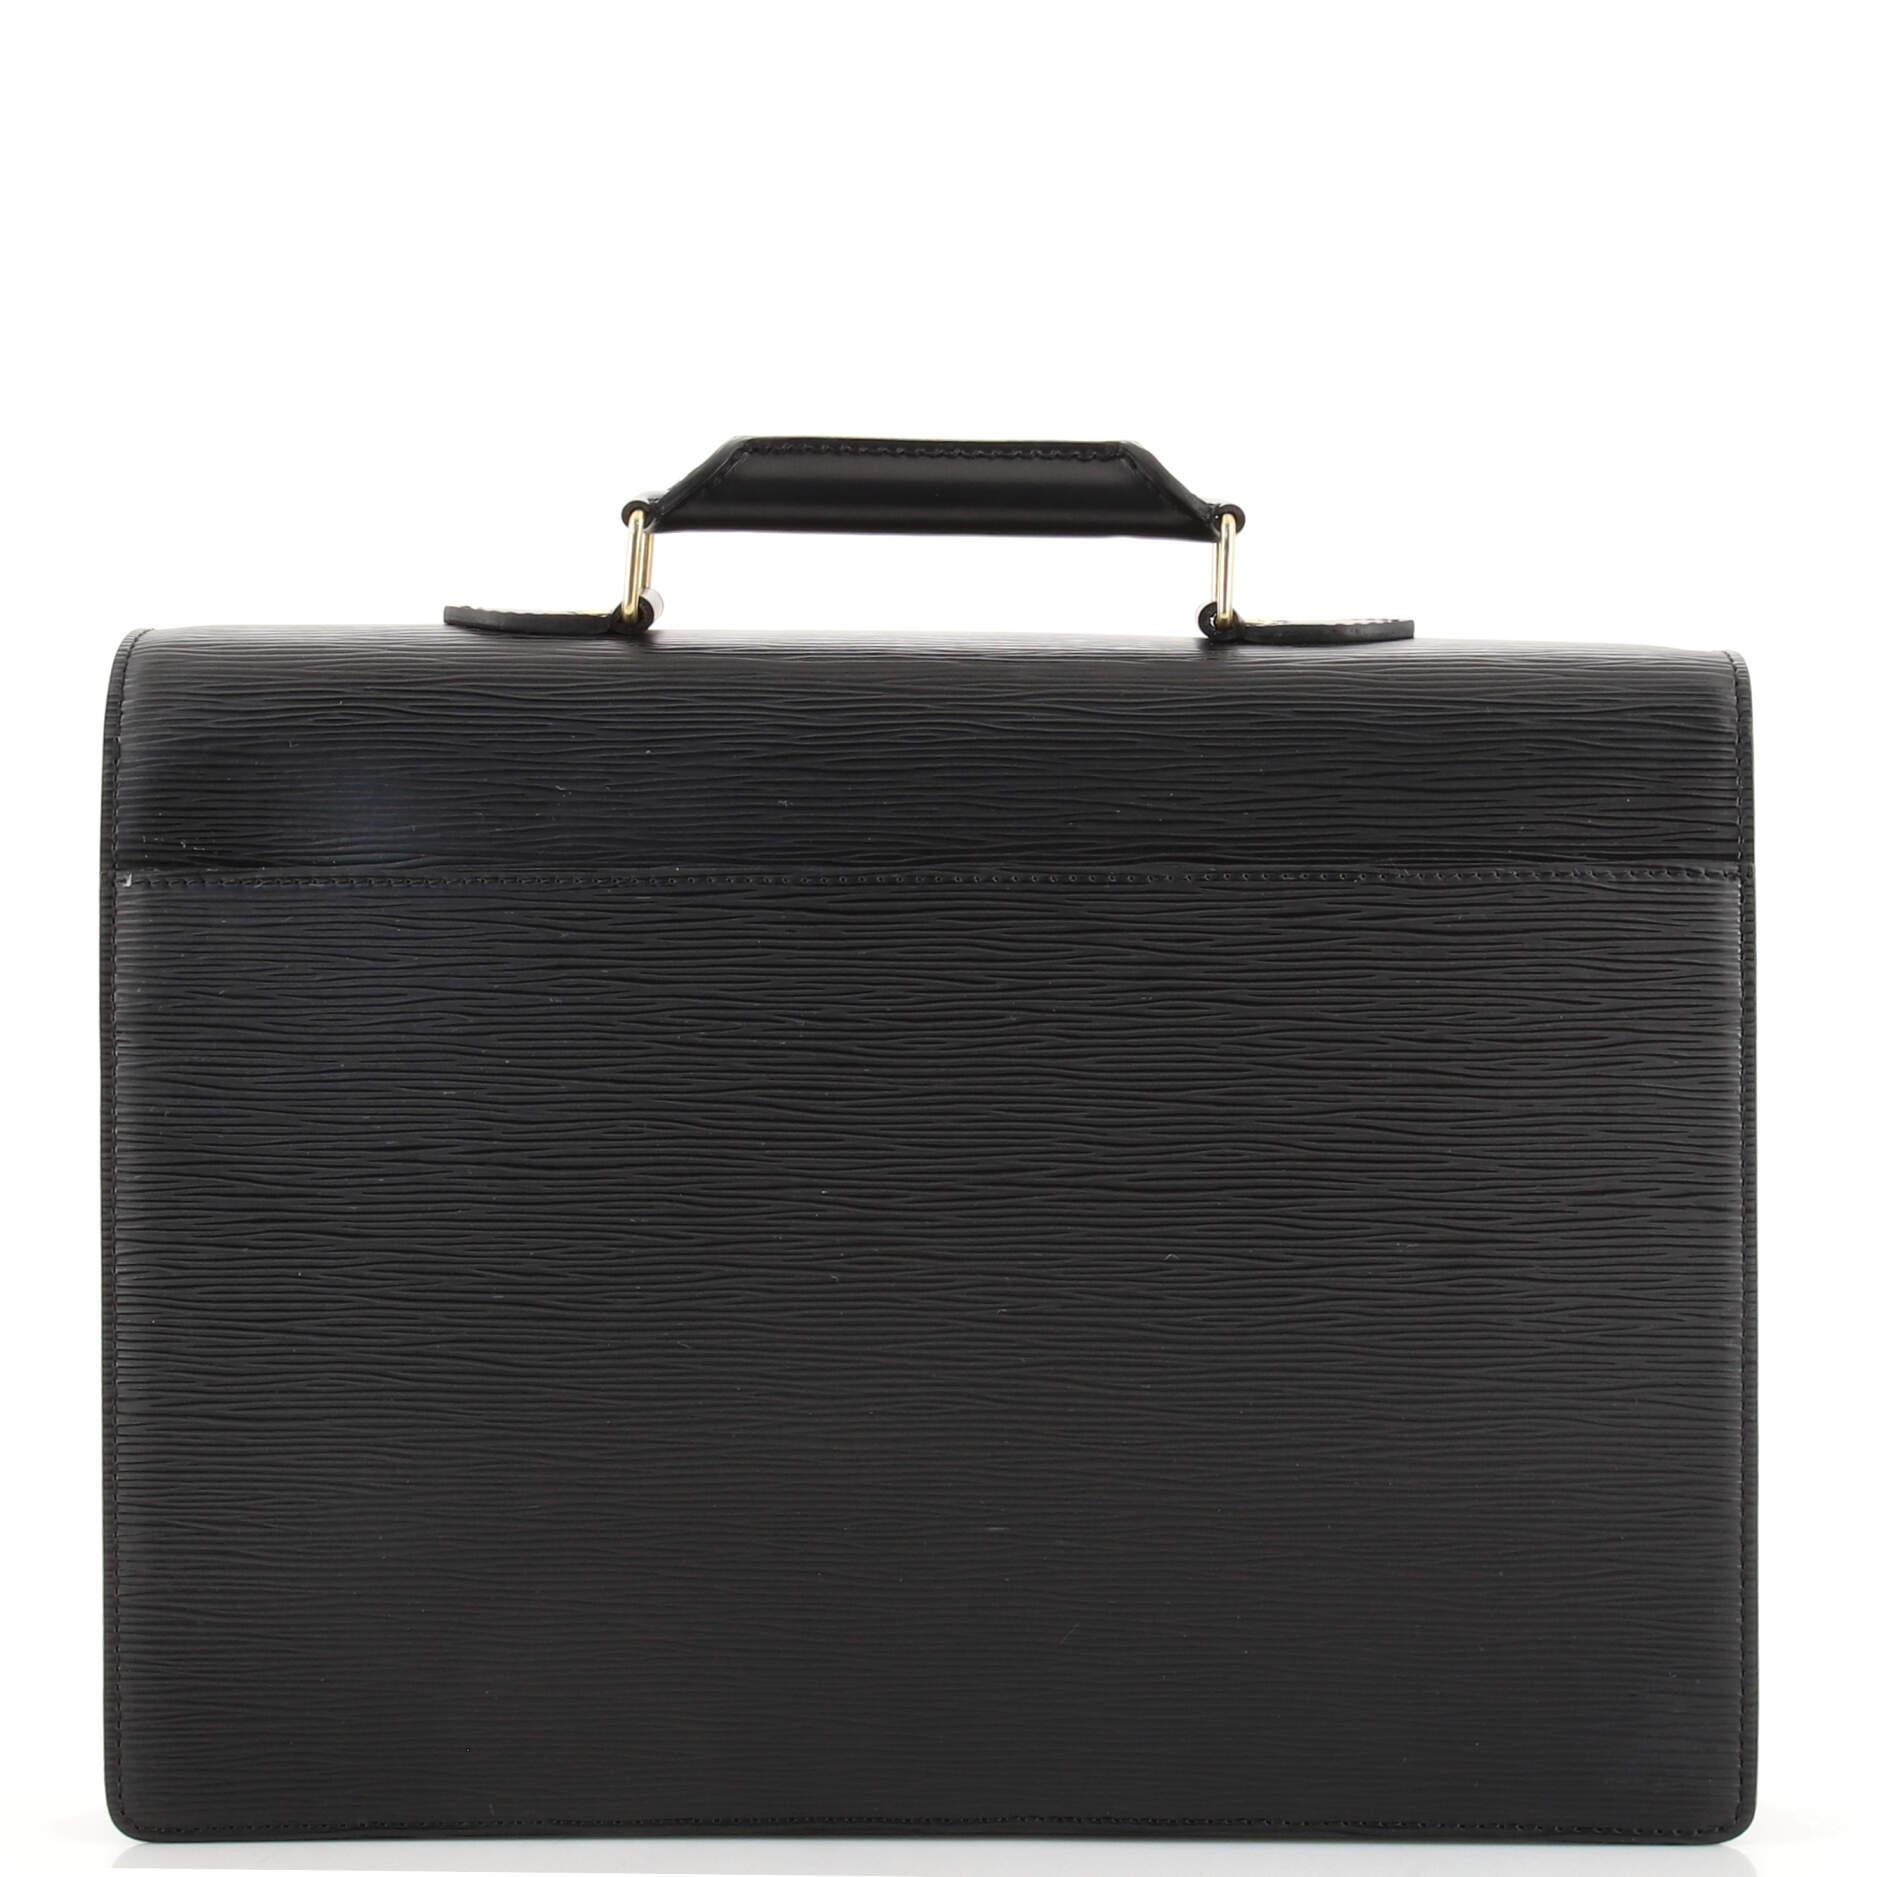 Black Louis Vuitton Porte Documents Bandouliere Epi Leather